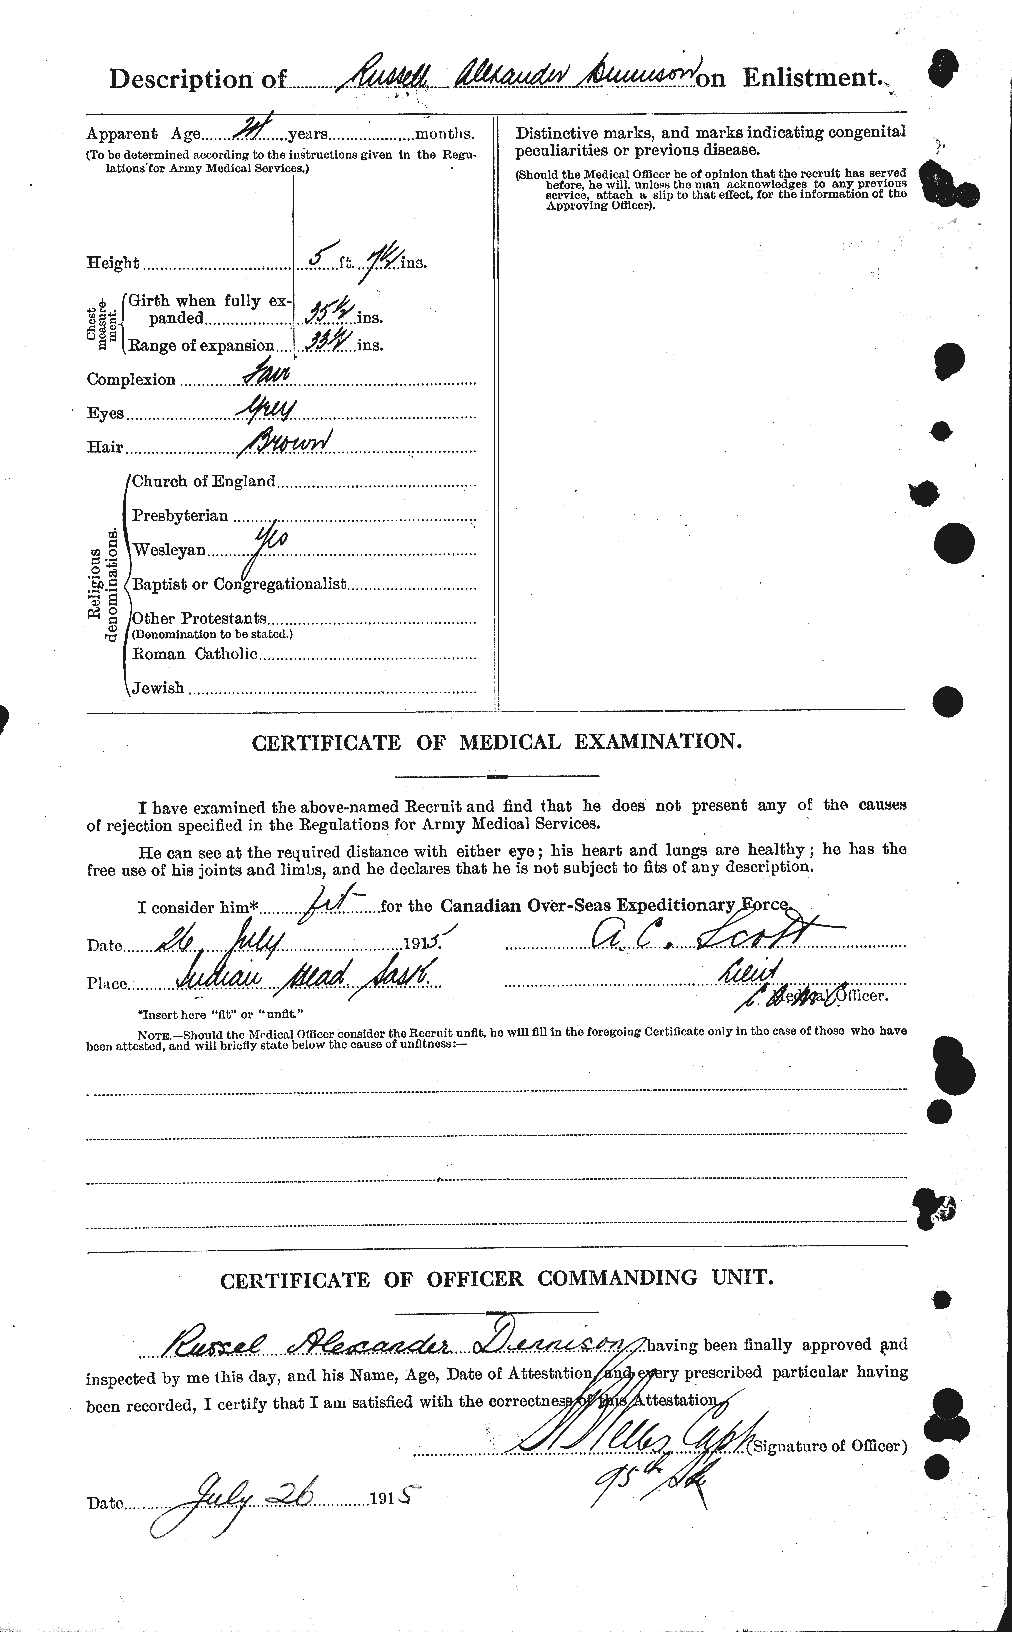 Dossiers du Personnel de la Première Guerre mondiale - CEC 286328b